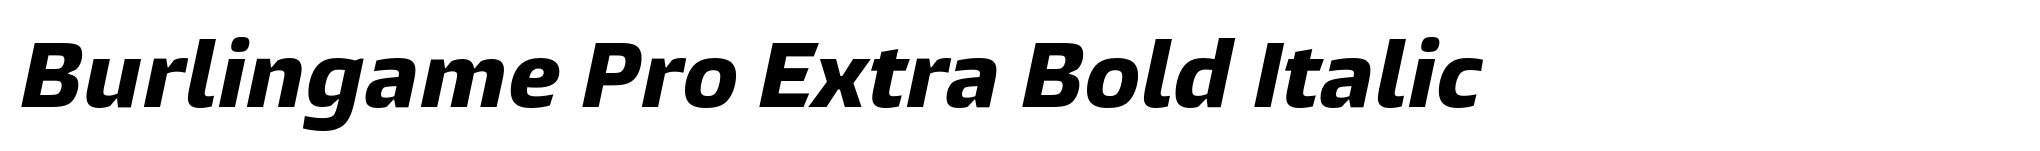 Burlingame Pro Extra Bold Italic image